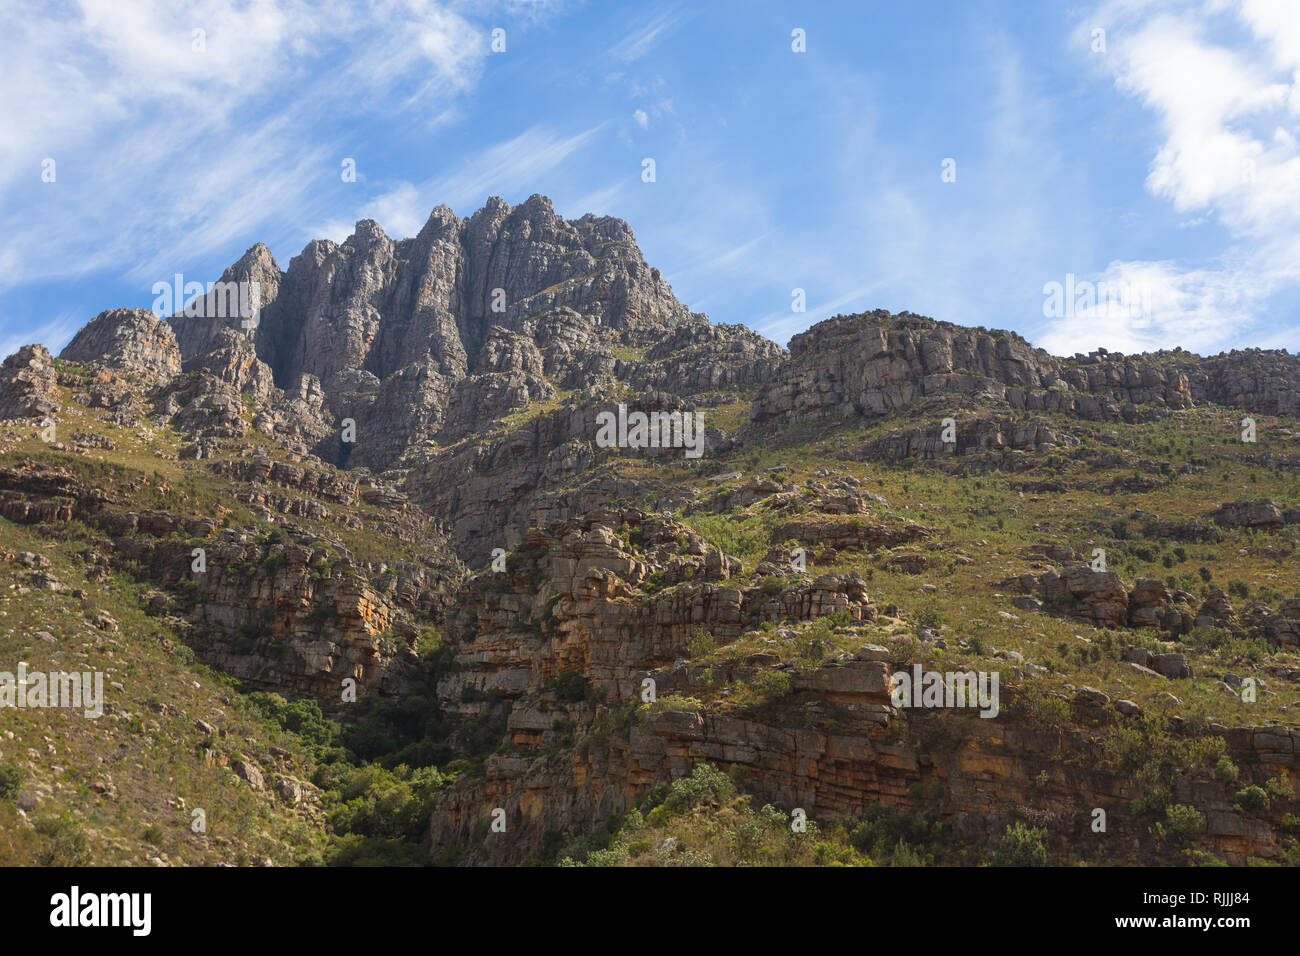 Montagne nella provincia del Capo occidentale del Sud Africa, situato tra Paarl e Worcester, il du Toitskloof montagne fanno parte del capo piegare la cinghia Foto Stock